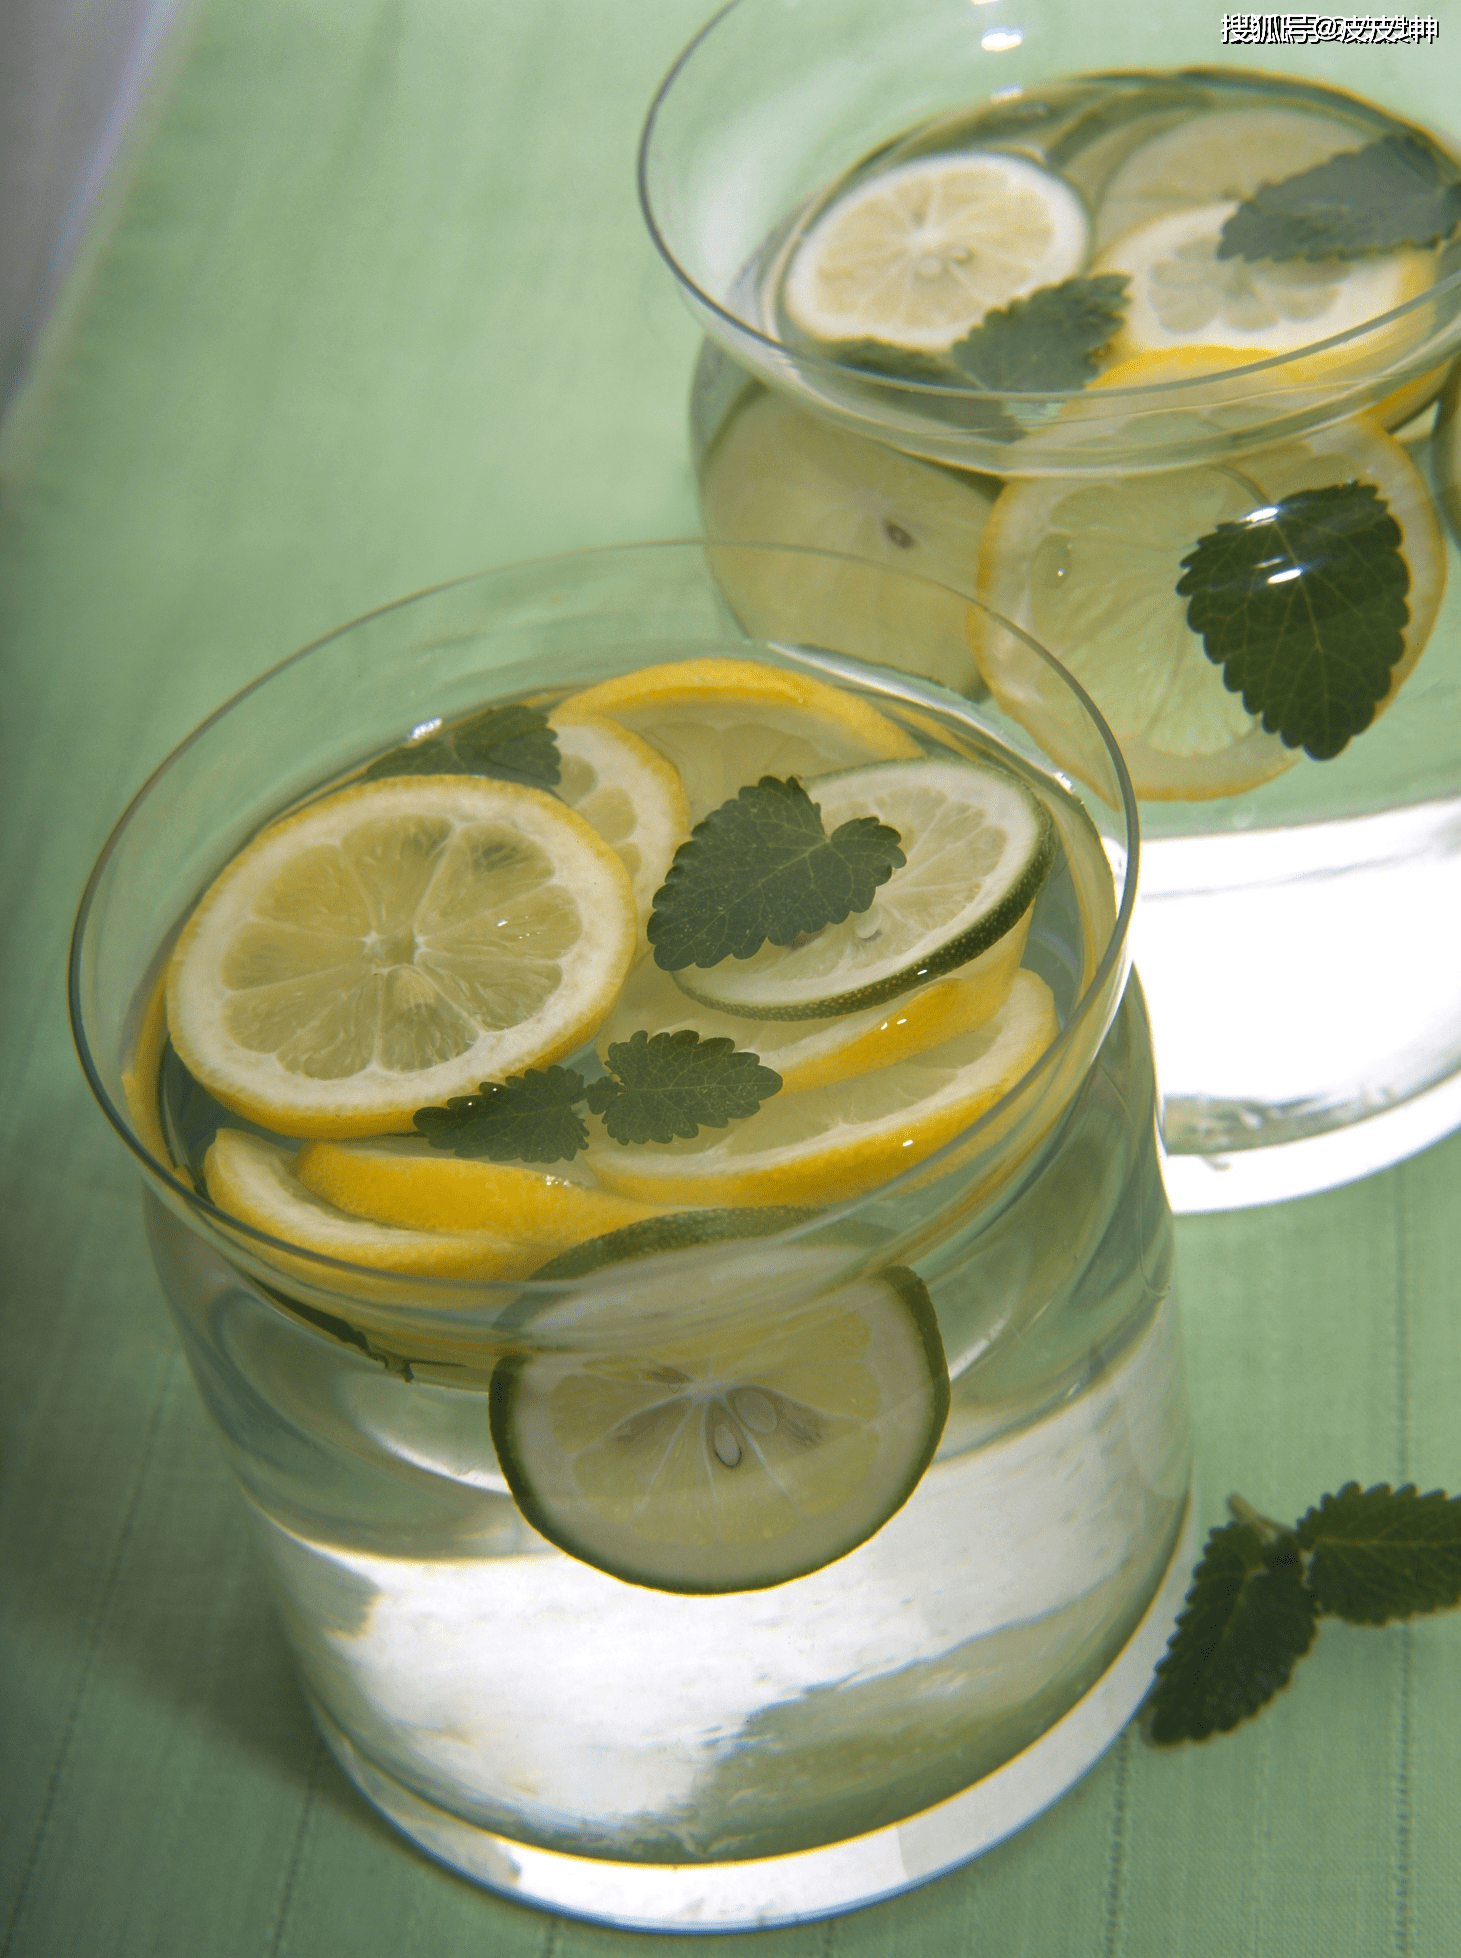 每天喝一杯柠檬水就能有效美白吗?蚂蚁庄园最新答案